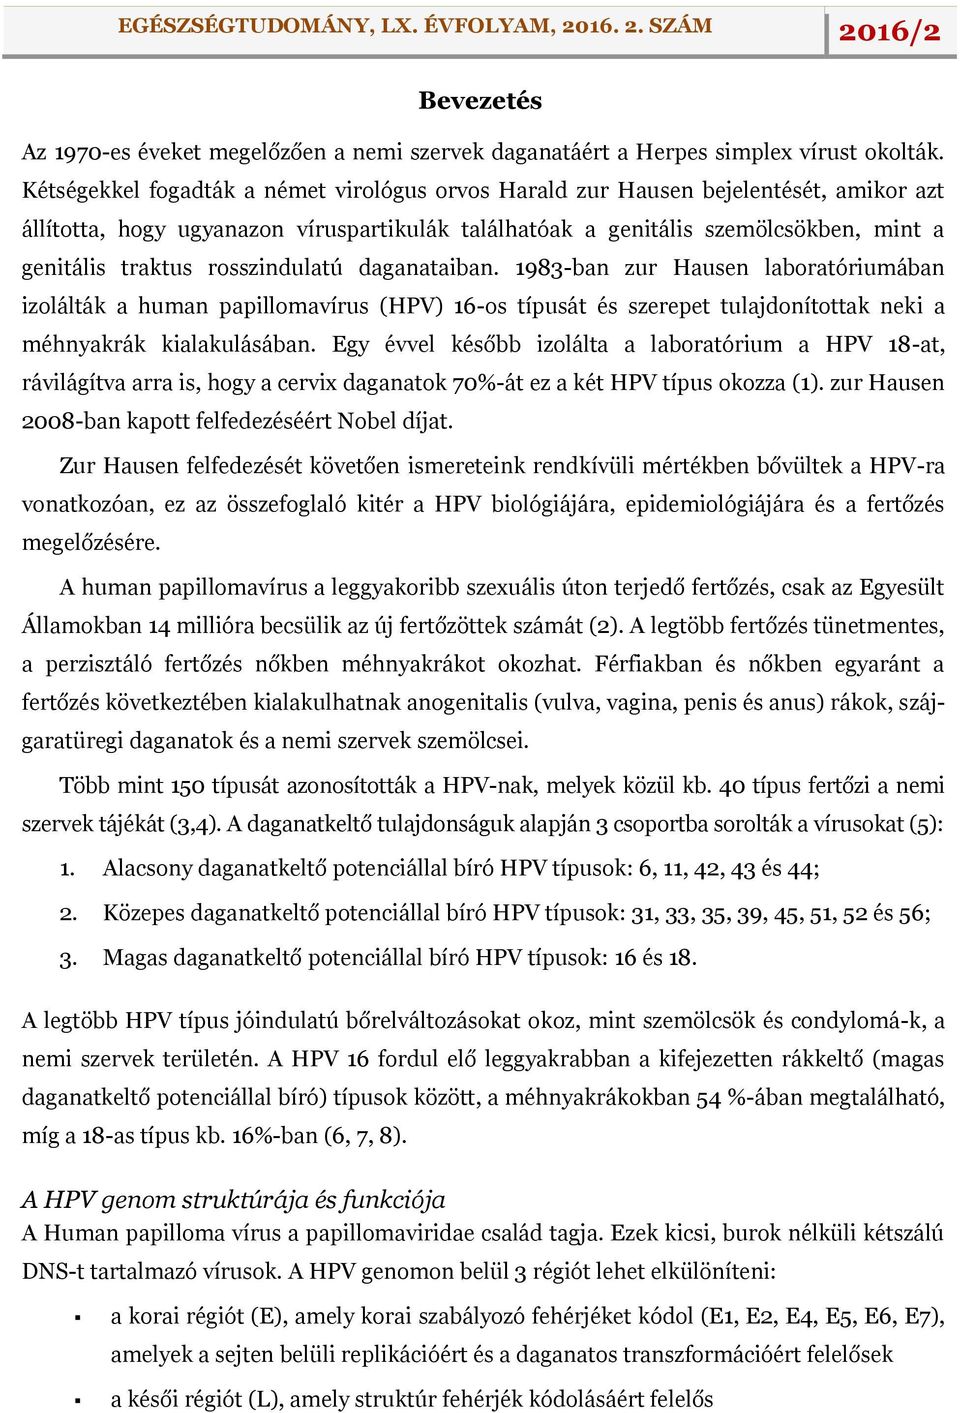 rosszindulatú daganataiban. 1983-ban zur Hausen laboratóriumában izolálták a human papillomavírus (HPV) 16-os típusát és szerepet tulajdonítottak neki a méhnyakrák kialakulásában.